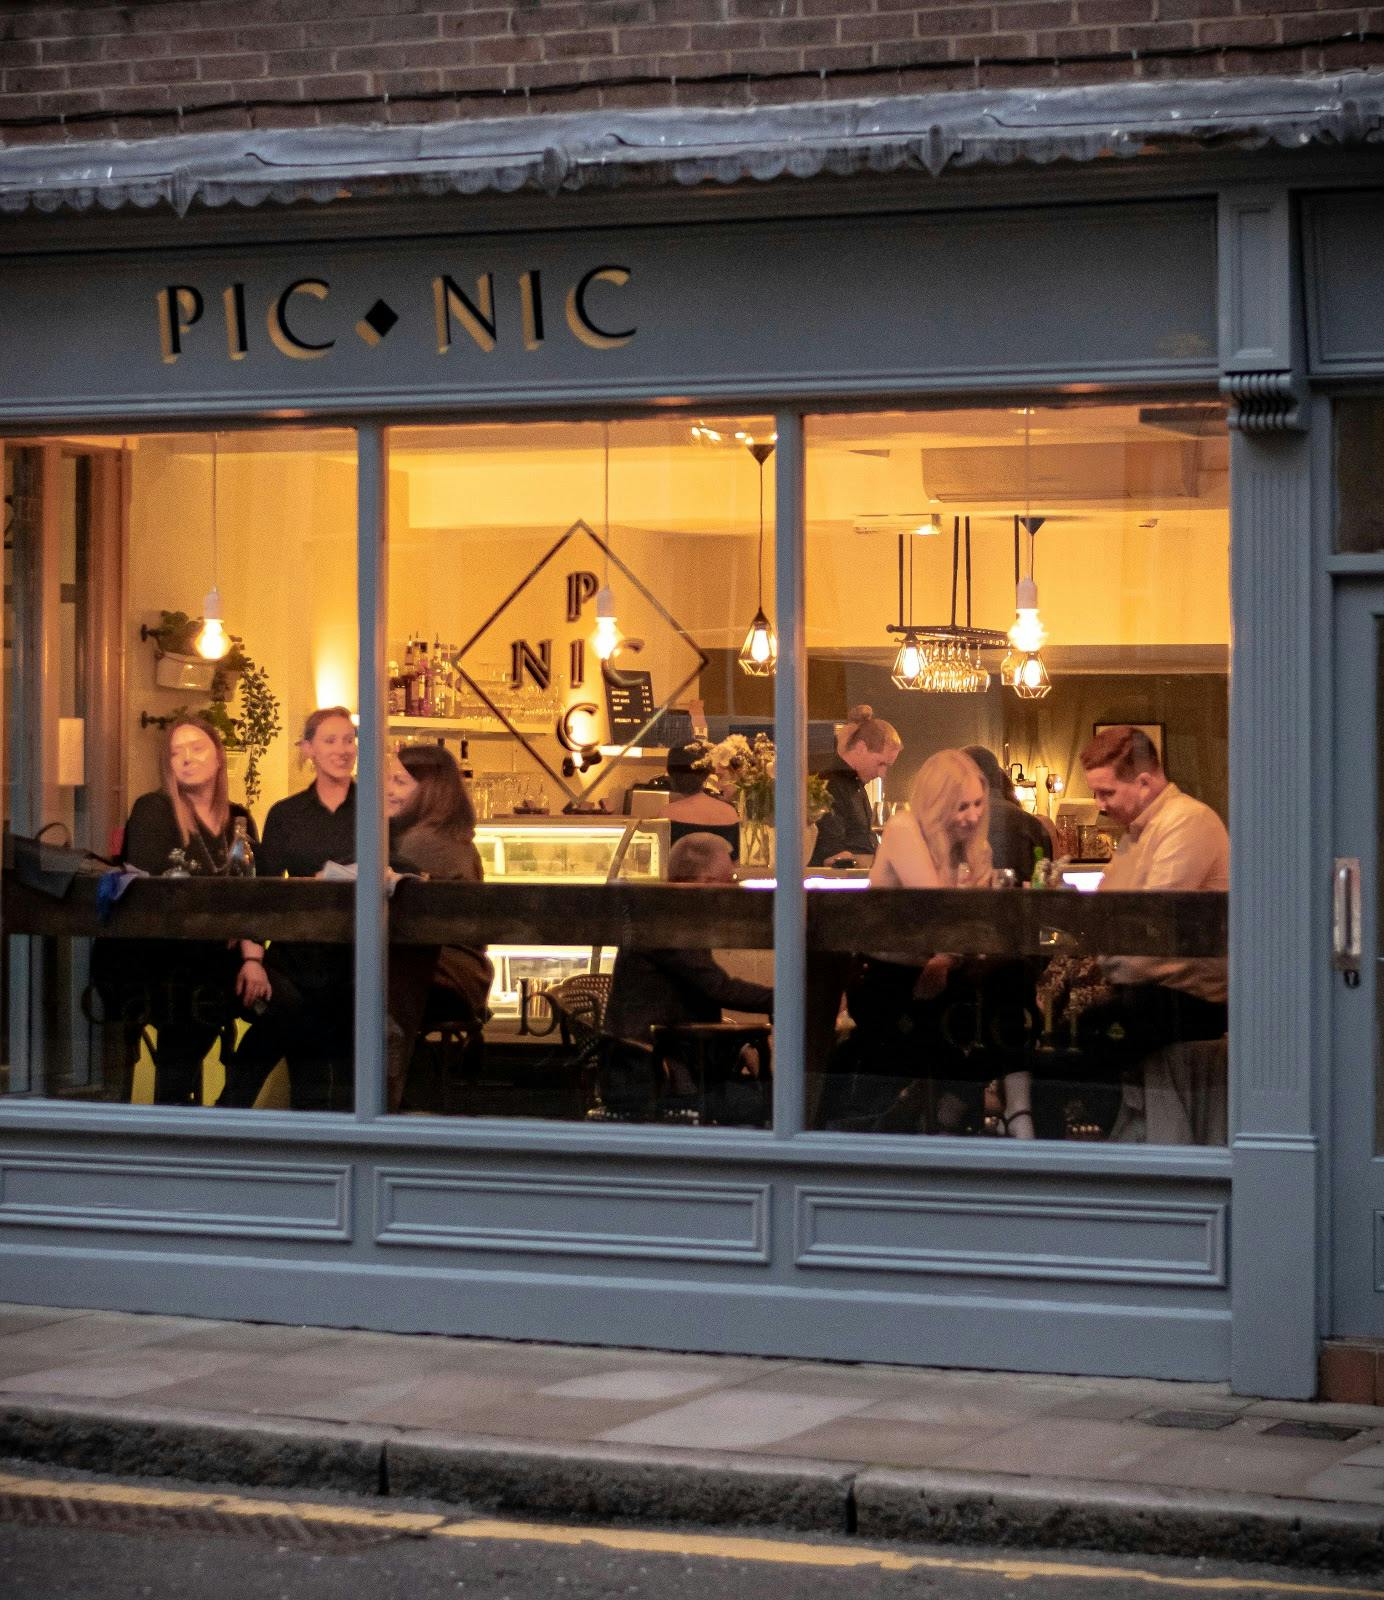 Image - Picnic - Cafe / Deli / Wine Bar